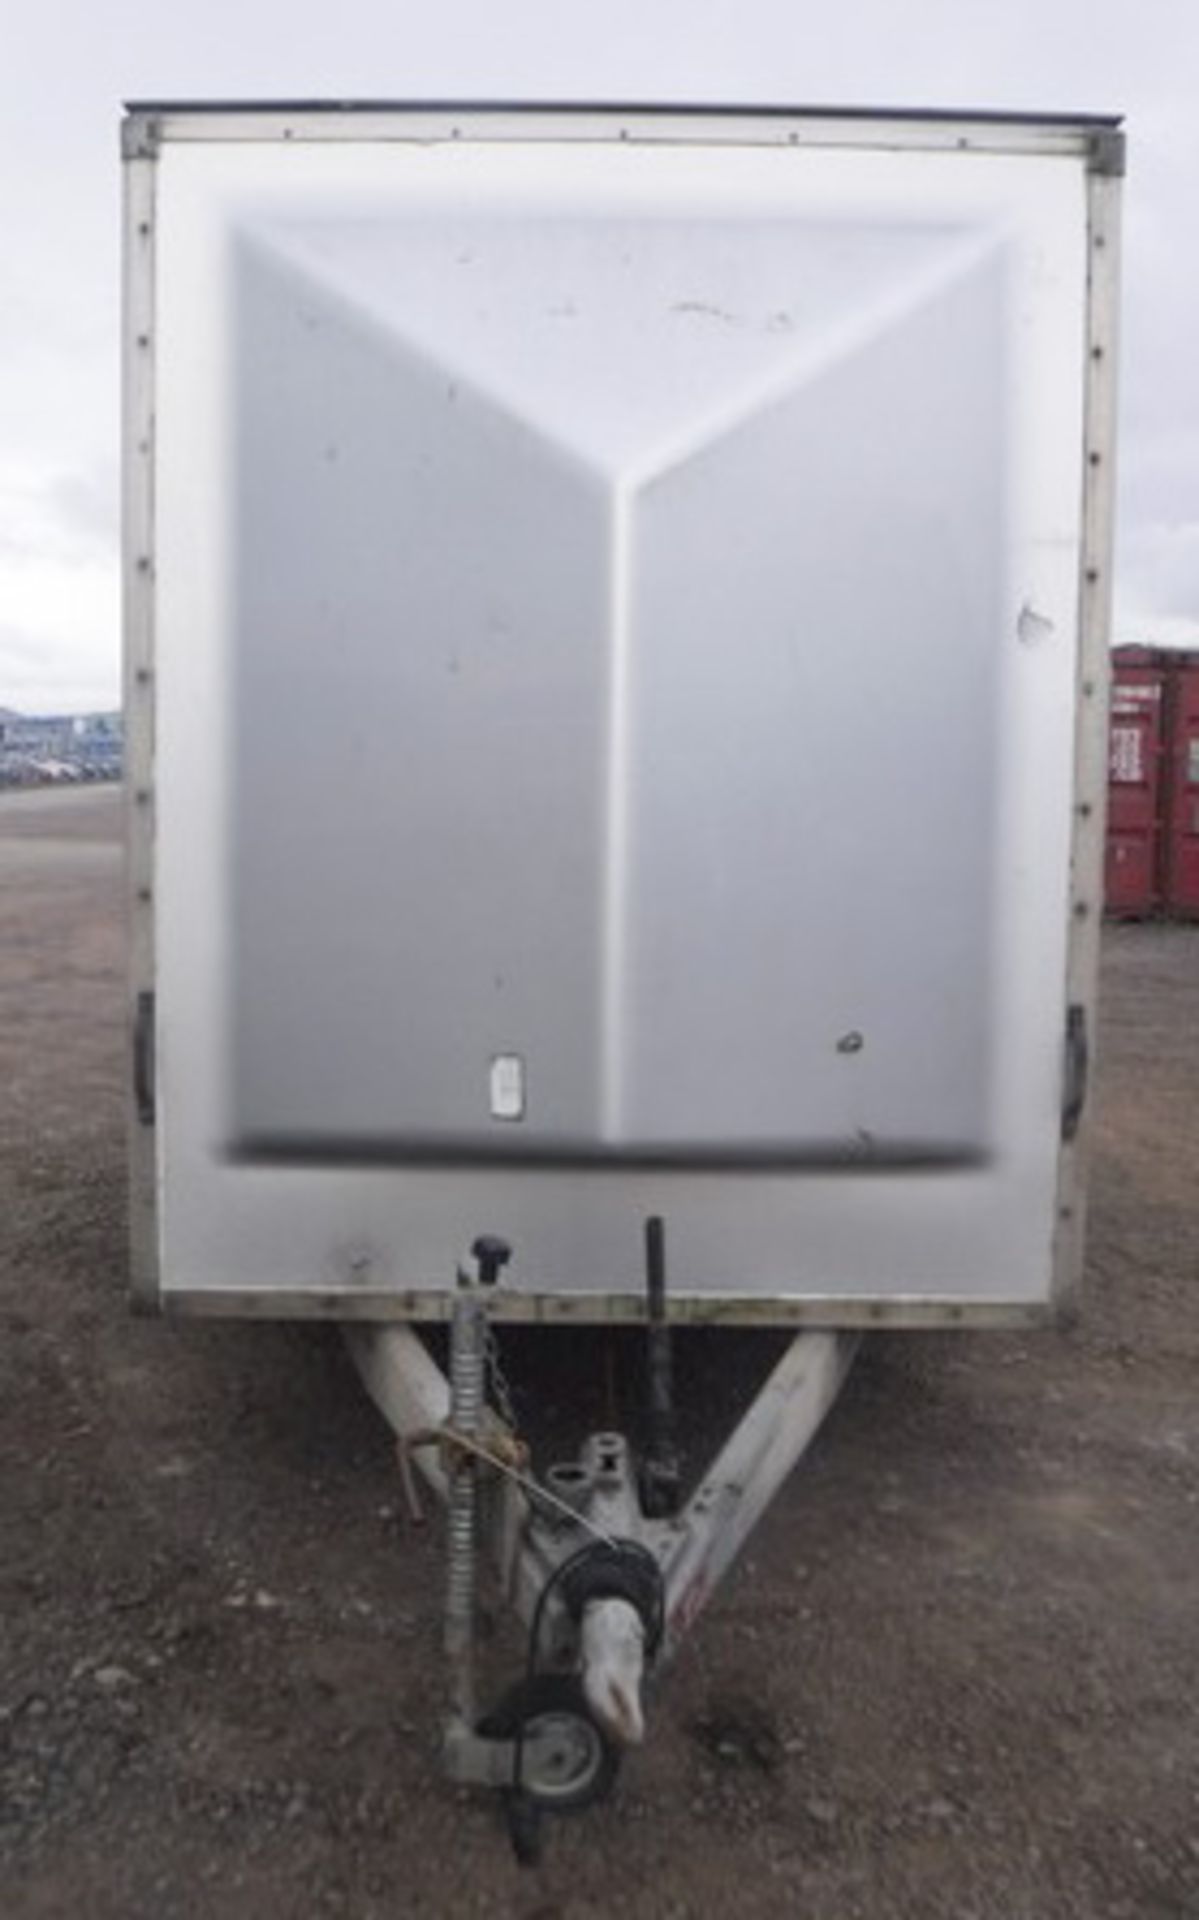 INDESPENSION box trailer. VIN - SDHS80DS G053933. H - 7ft, L - 12ft, W - 6ft. Asset - 758-1308 - Bild 5 aus 12